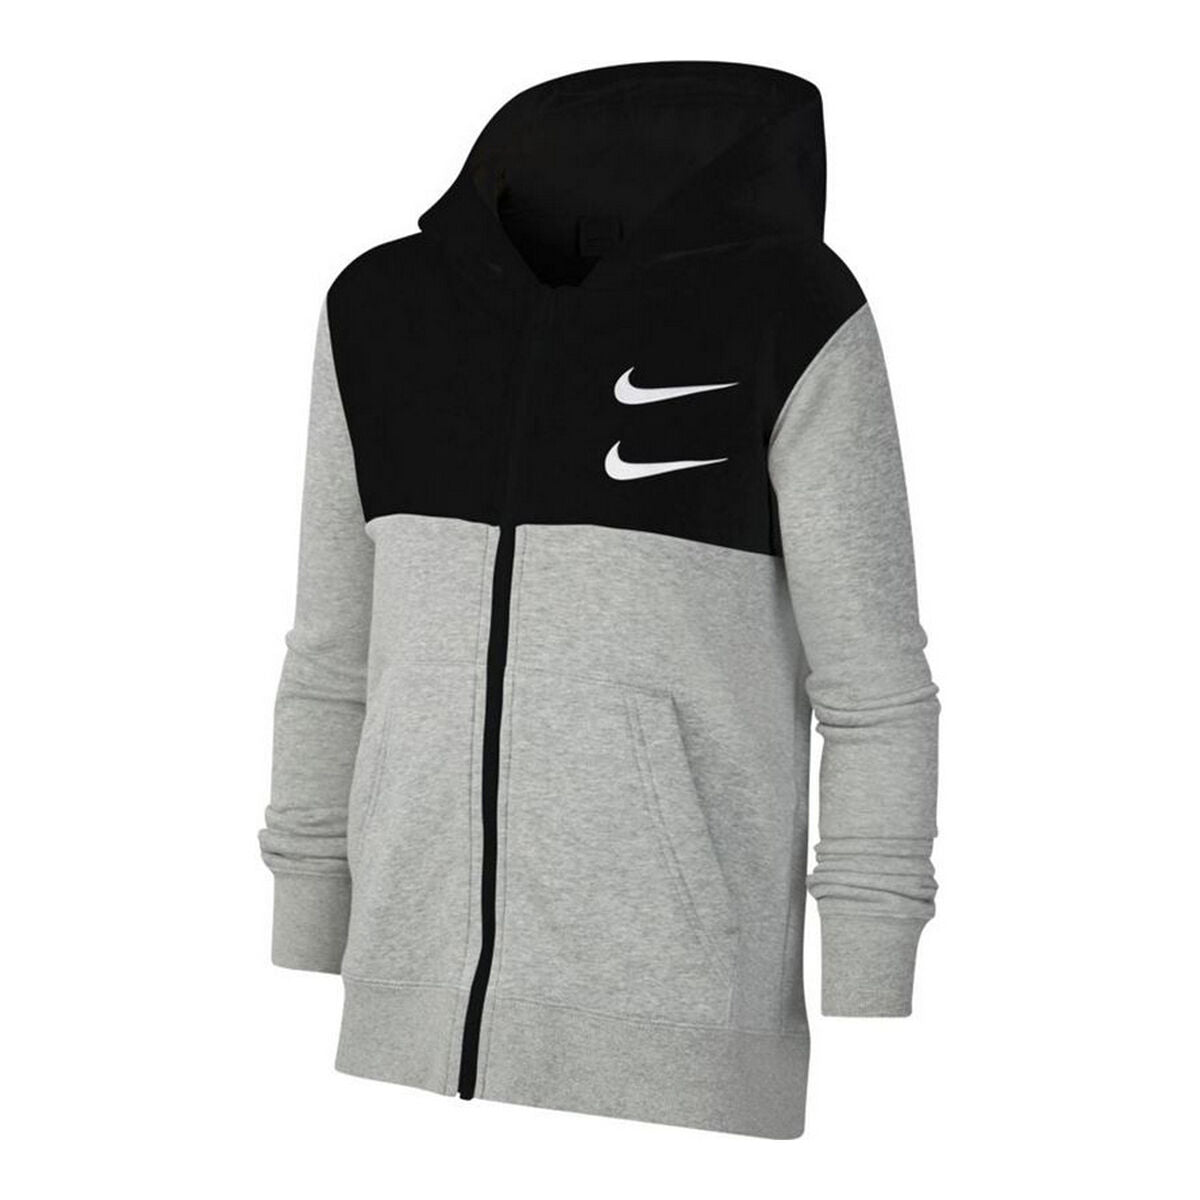 Sports Jacket Nike Swoosh Dark grey